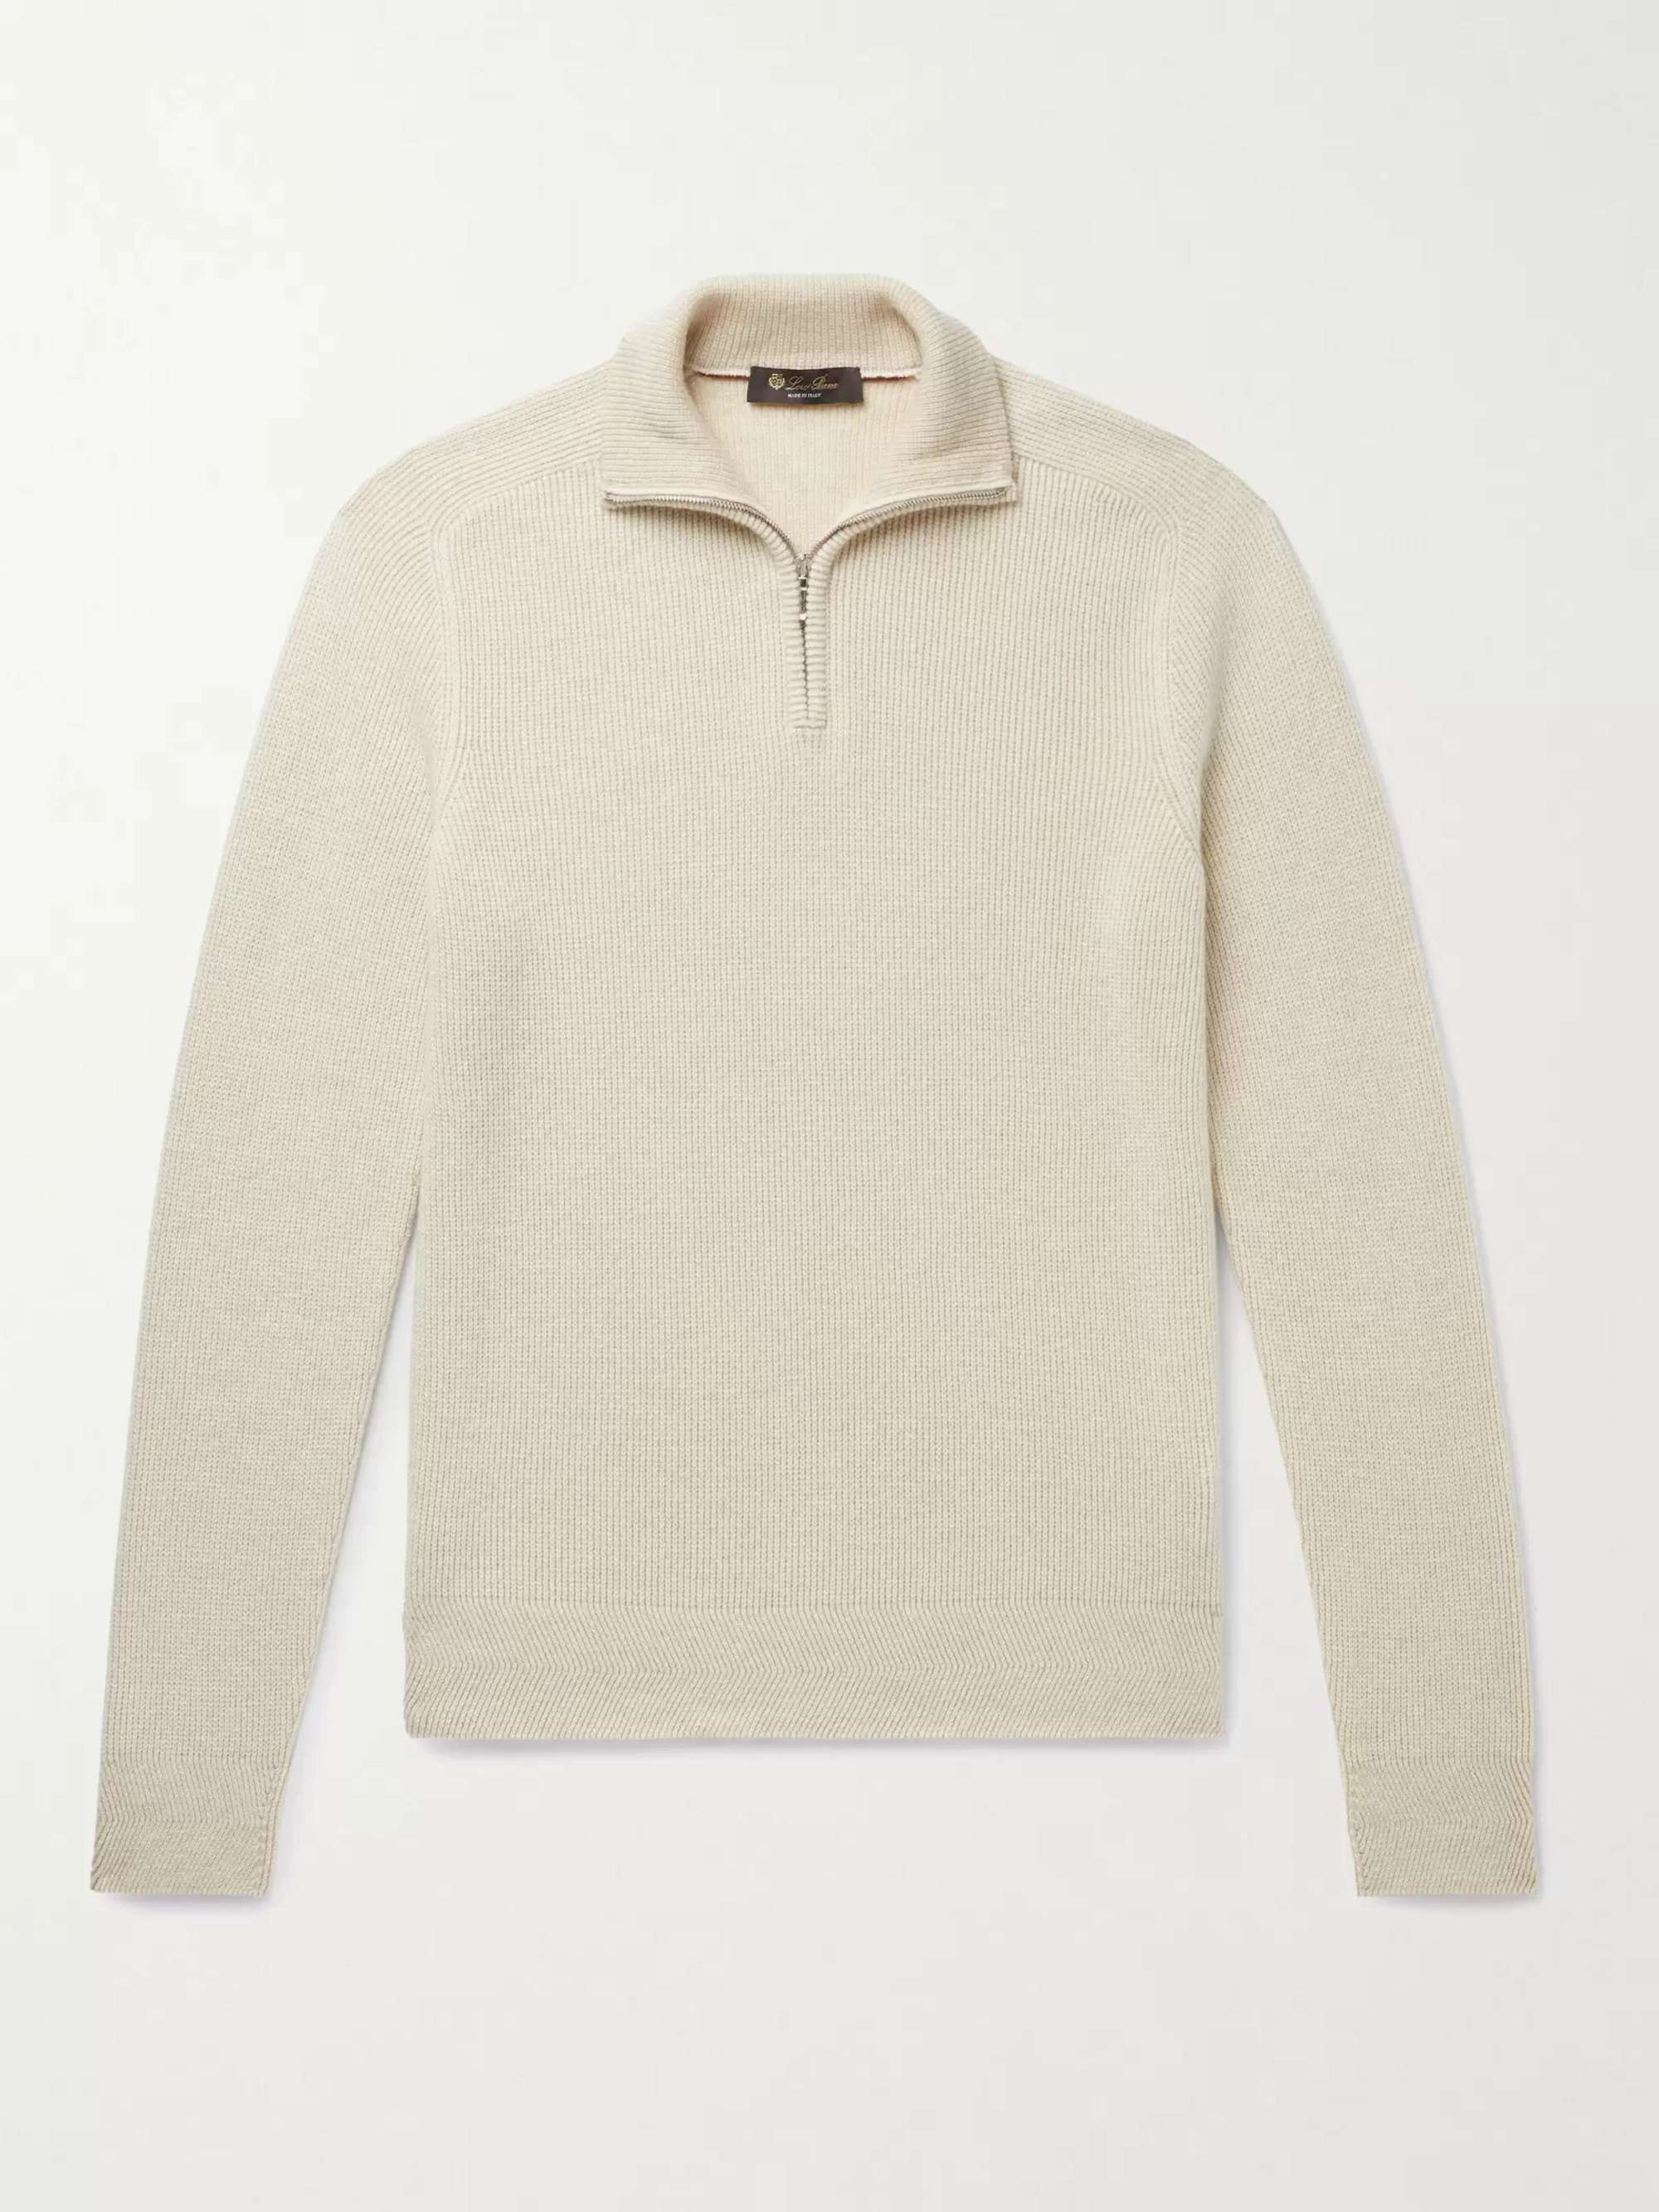 LORO PIANA Cashmere Half-Zip Sweater for Men | MR PORTER